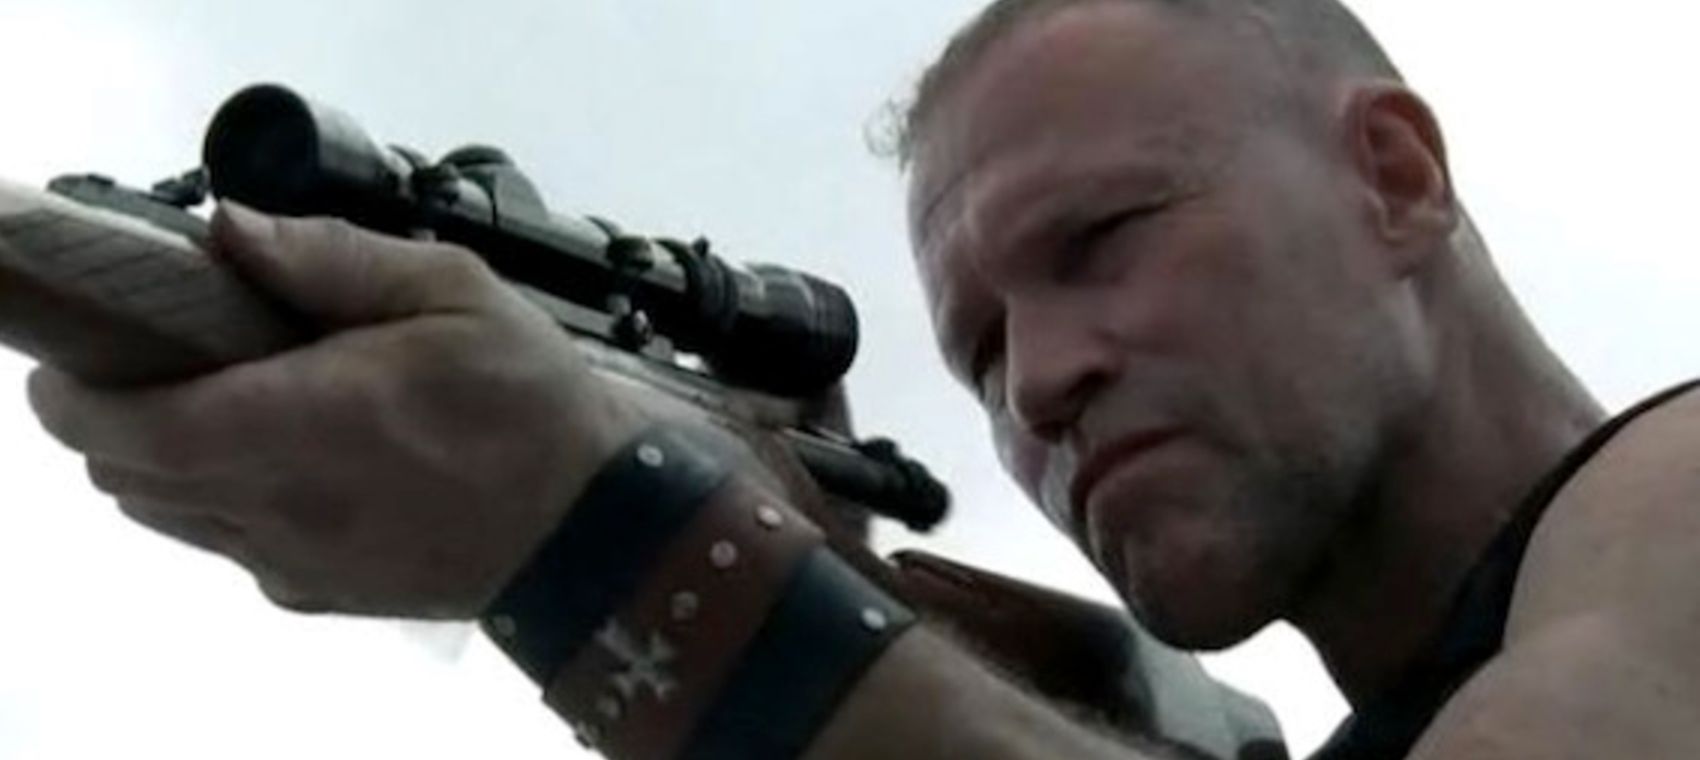 Michael Rooker as Merle in The Walking Dead